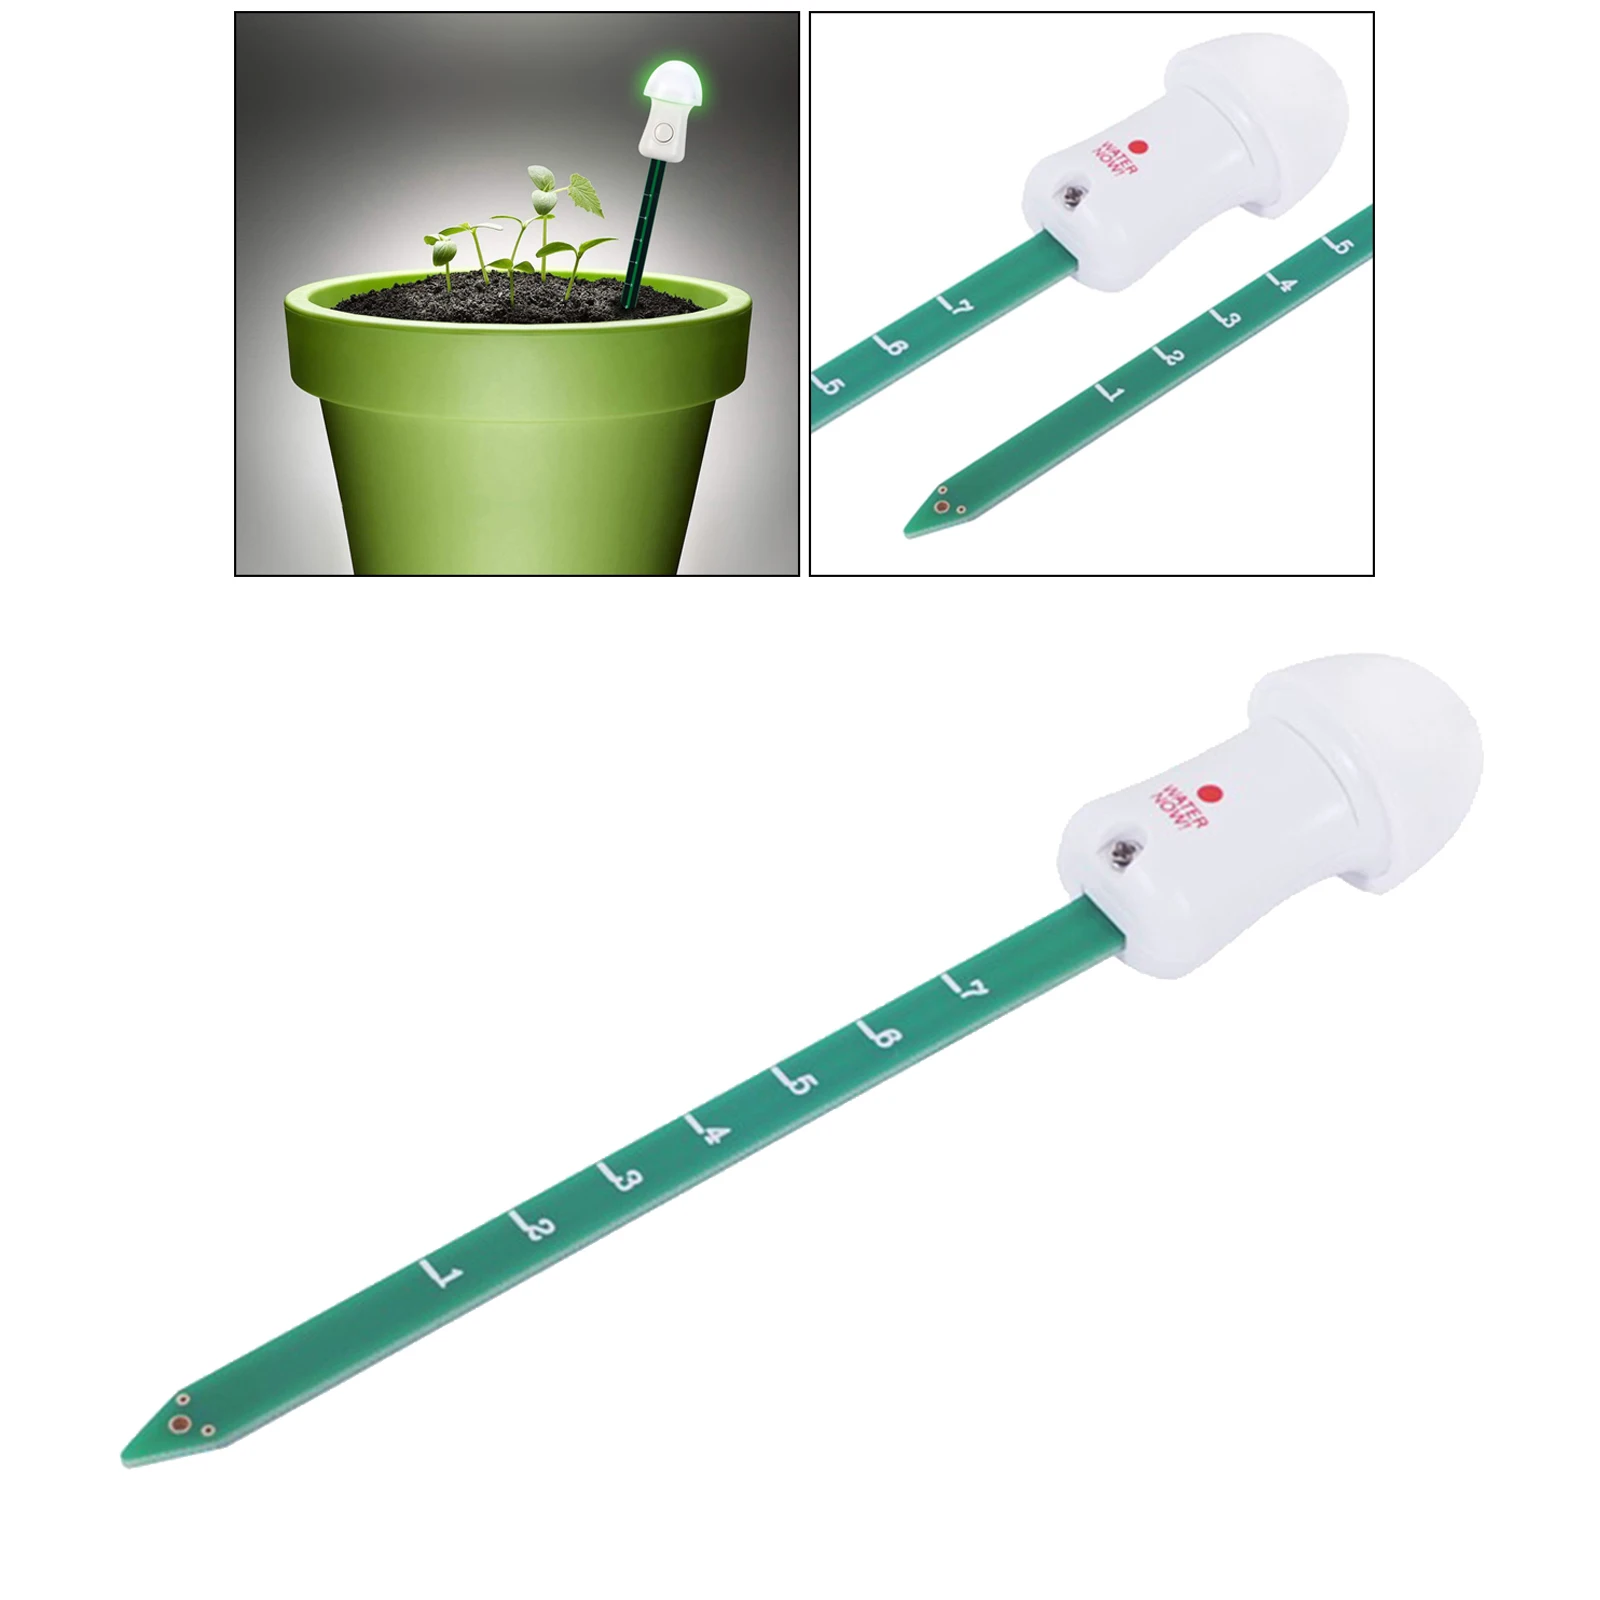 Digital Soil Moisture Meter Plant Moisture Meter for Flower Garden Lawn Plants Gross Sensor Battery Include